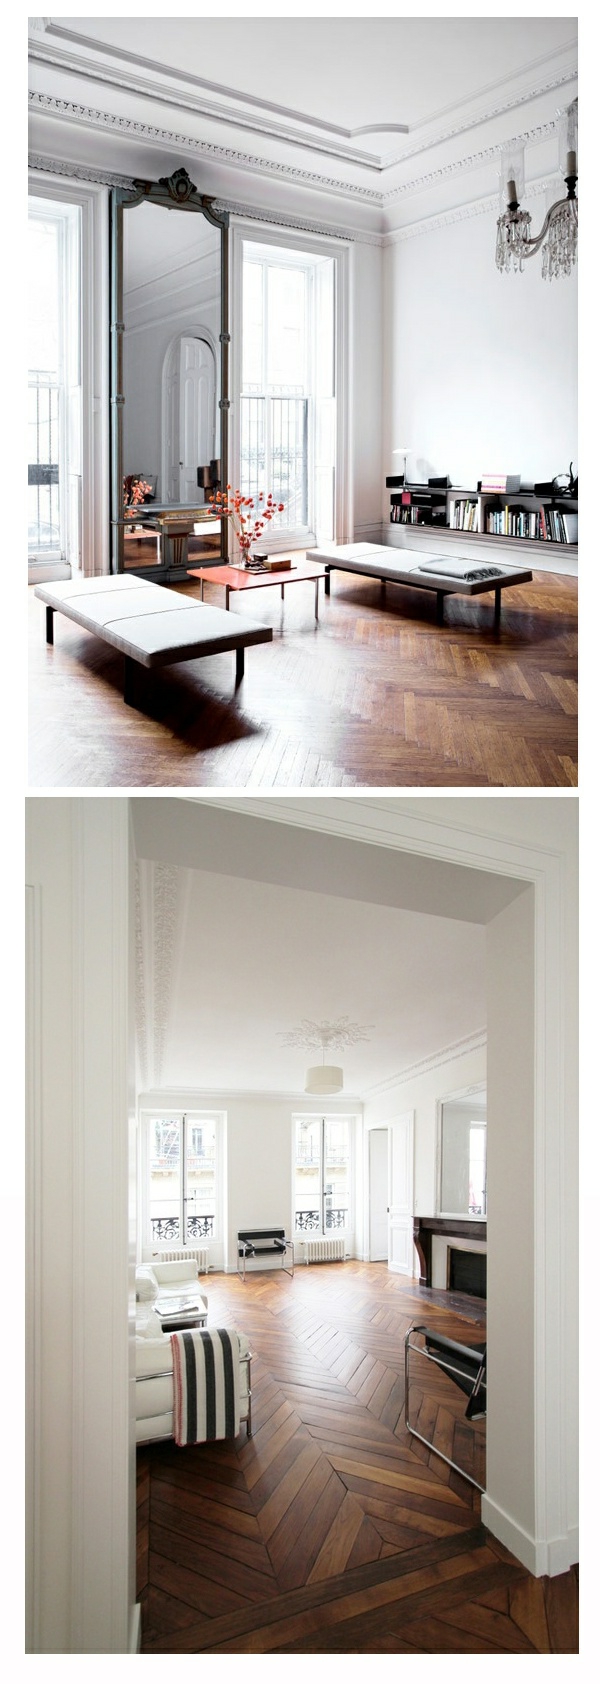 आंतरिक डिजाइन विचारों लकड़ी रहने वाले कमरे से फ़्लोरिंग